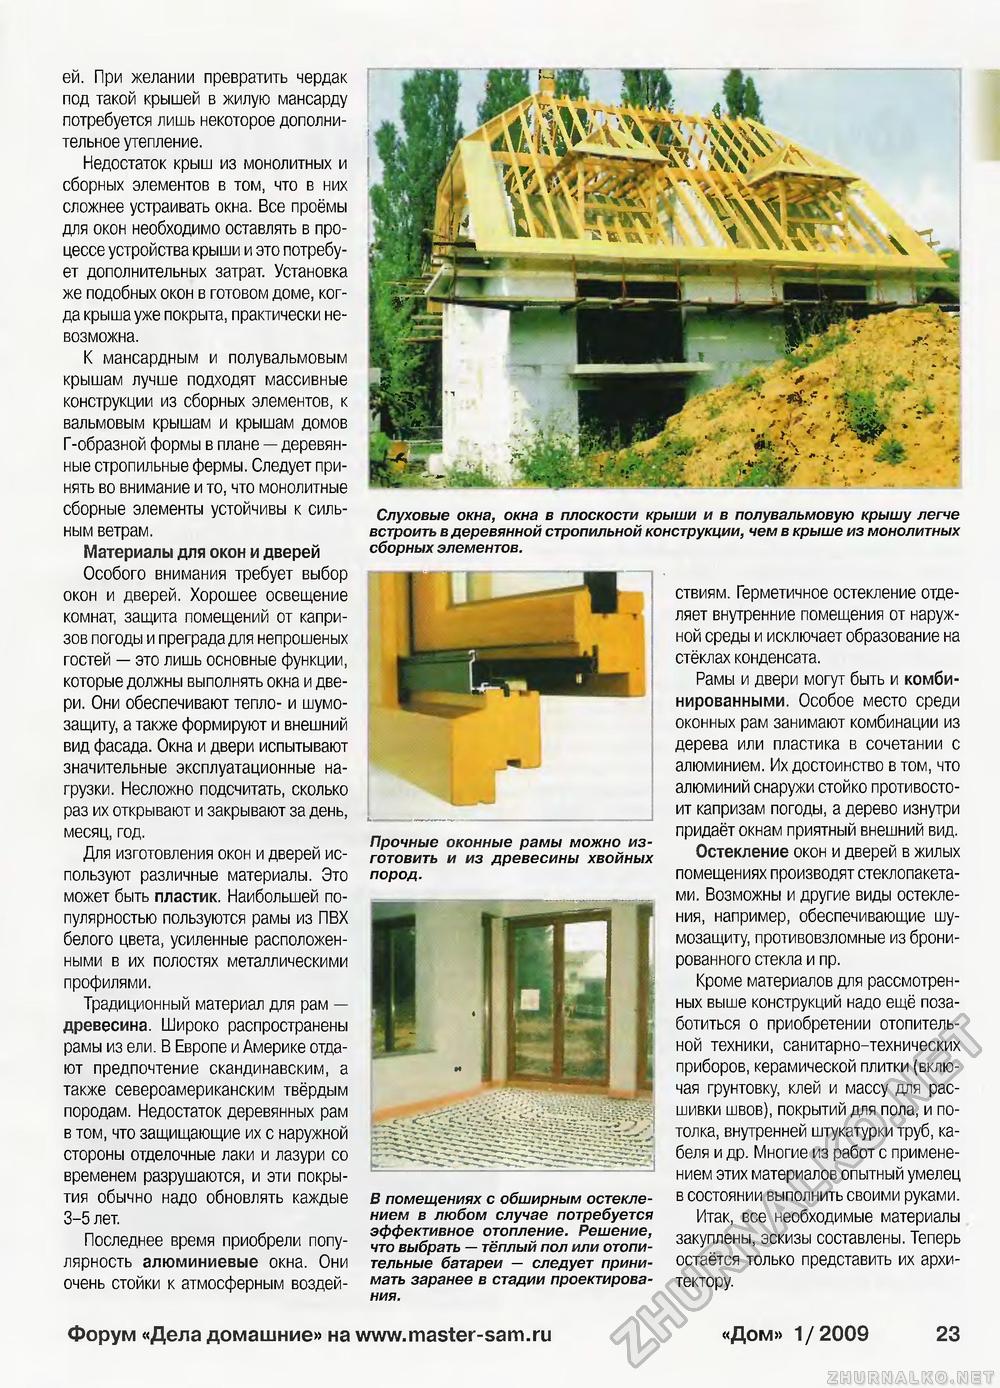 Дом 2009-01, страница 23